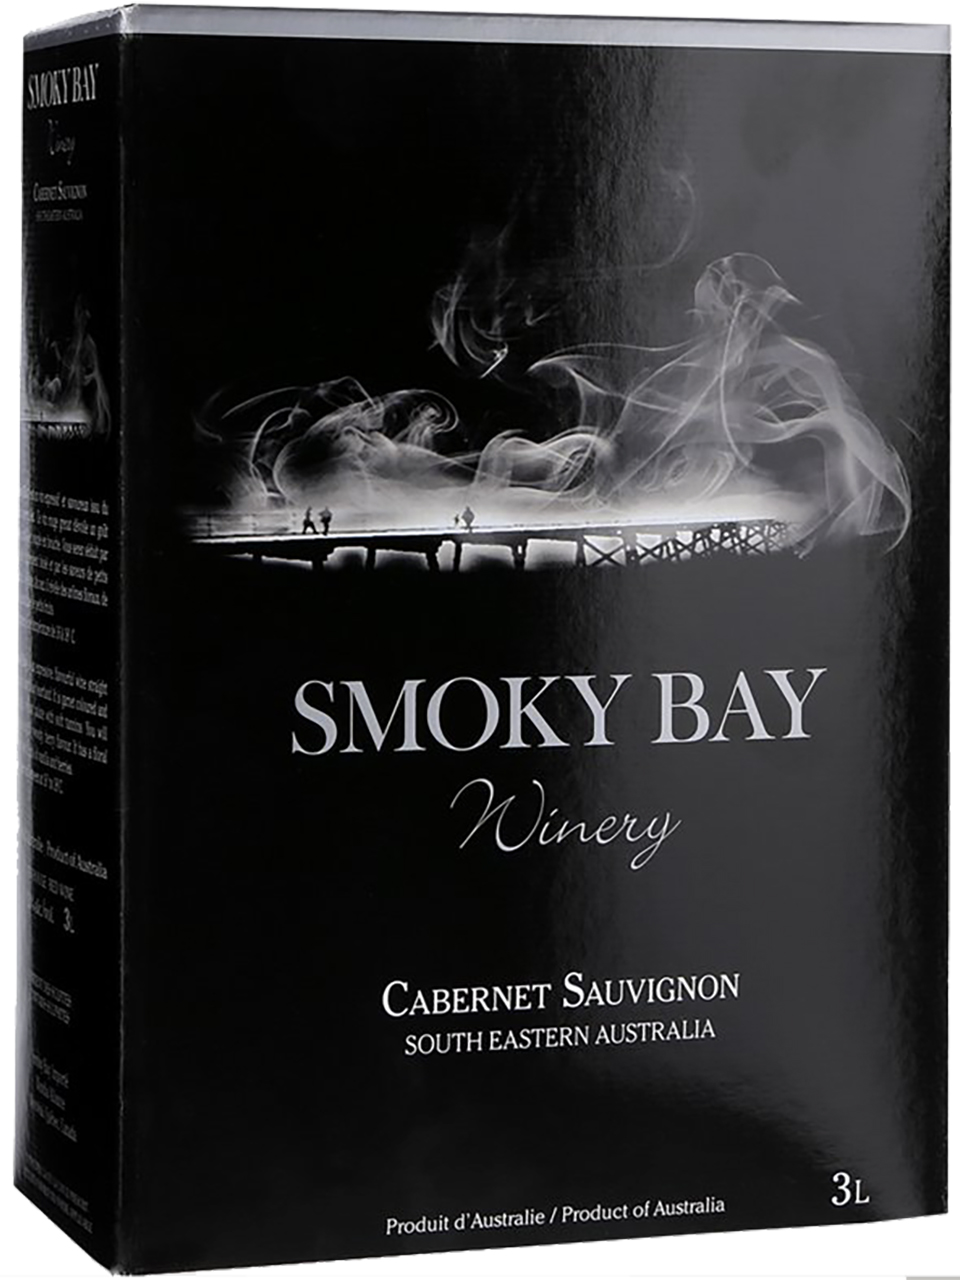 Smoky Bay Cabernet Sauvignon